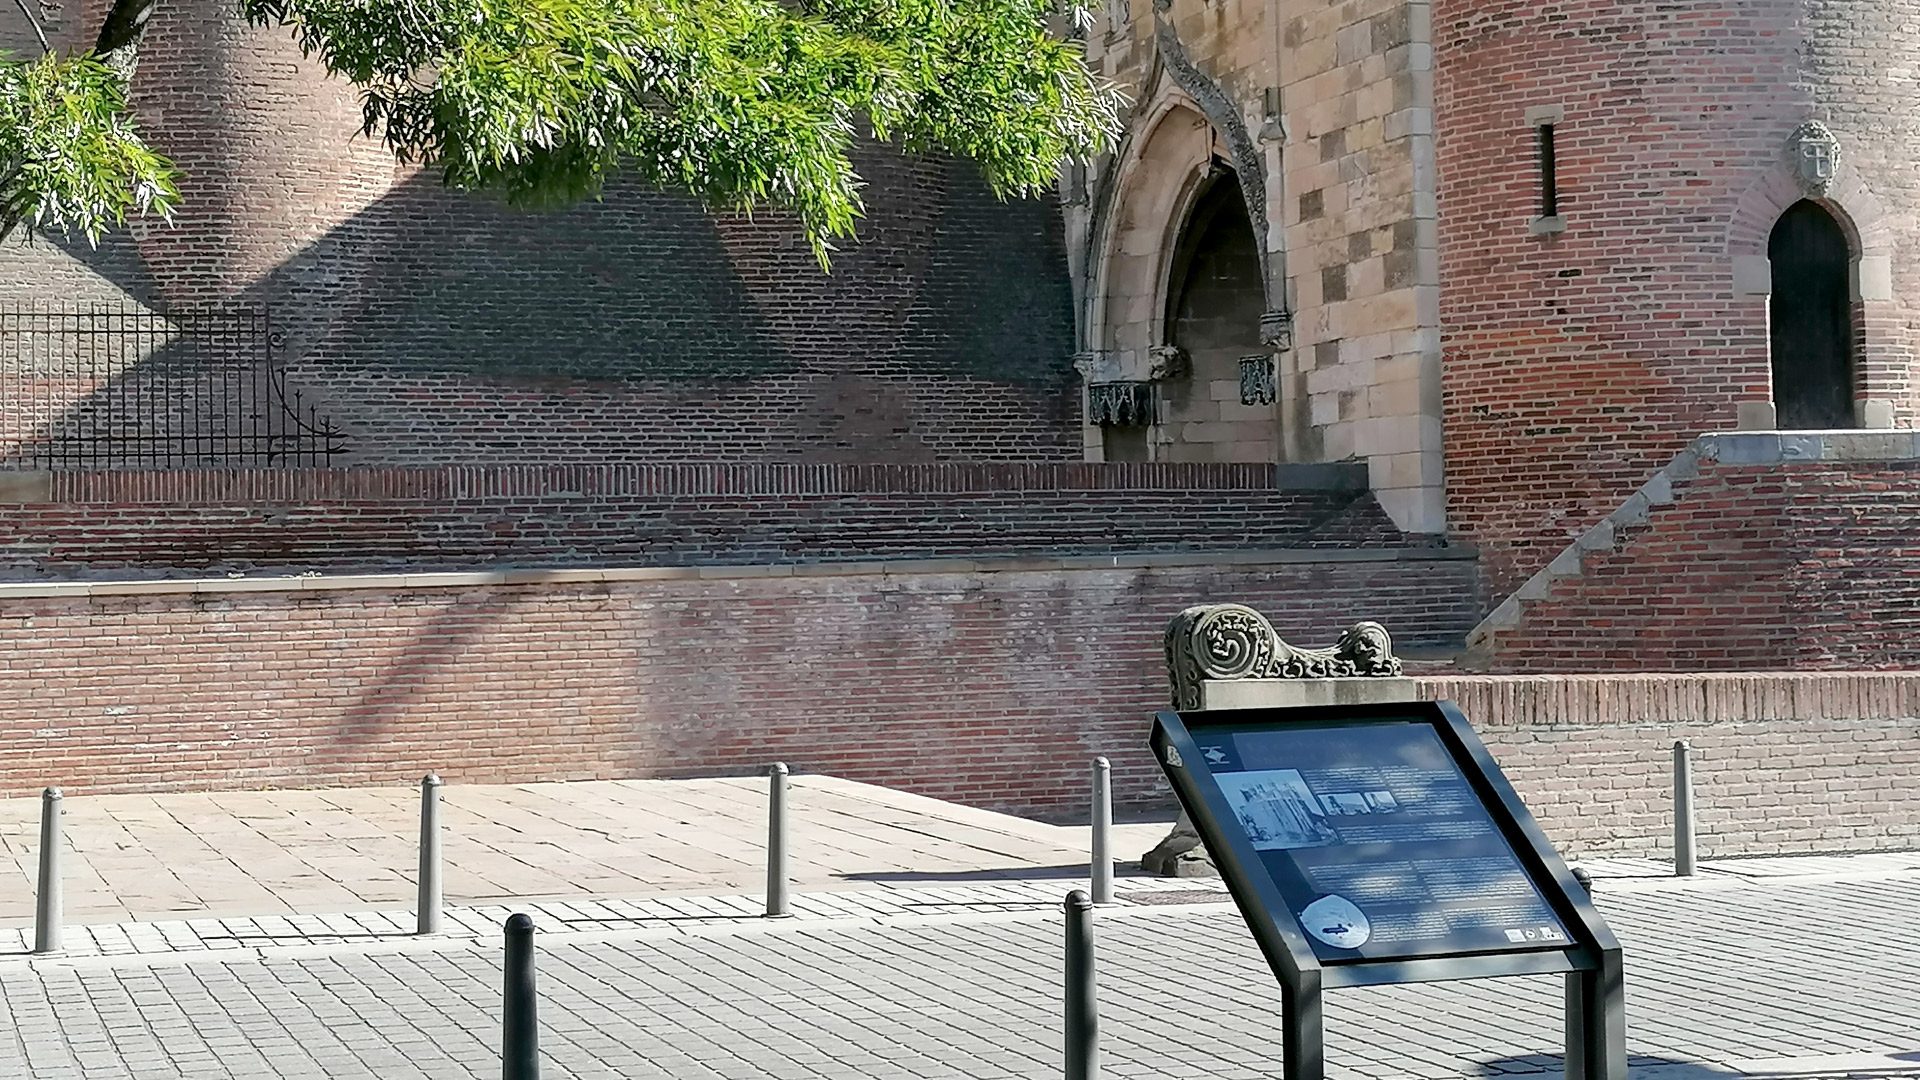 アルビの 3 つのマーク付き遺産ルート。ここでは、サント セシル大聖堂の門の前にある説明パネル